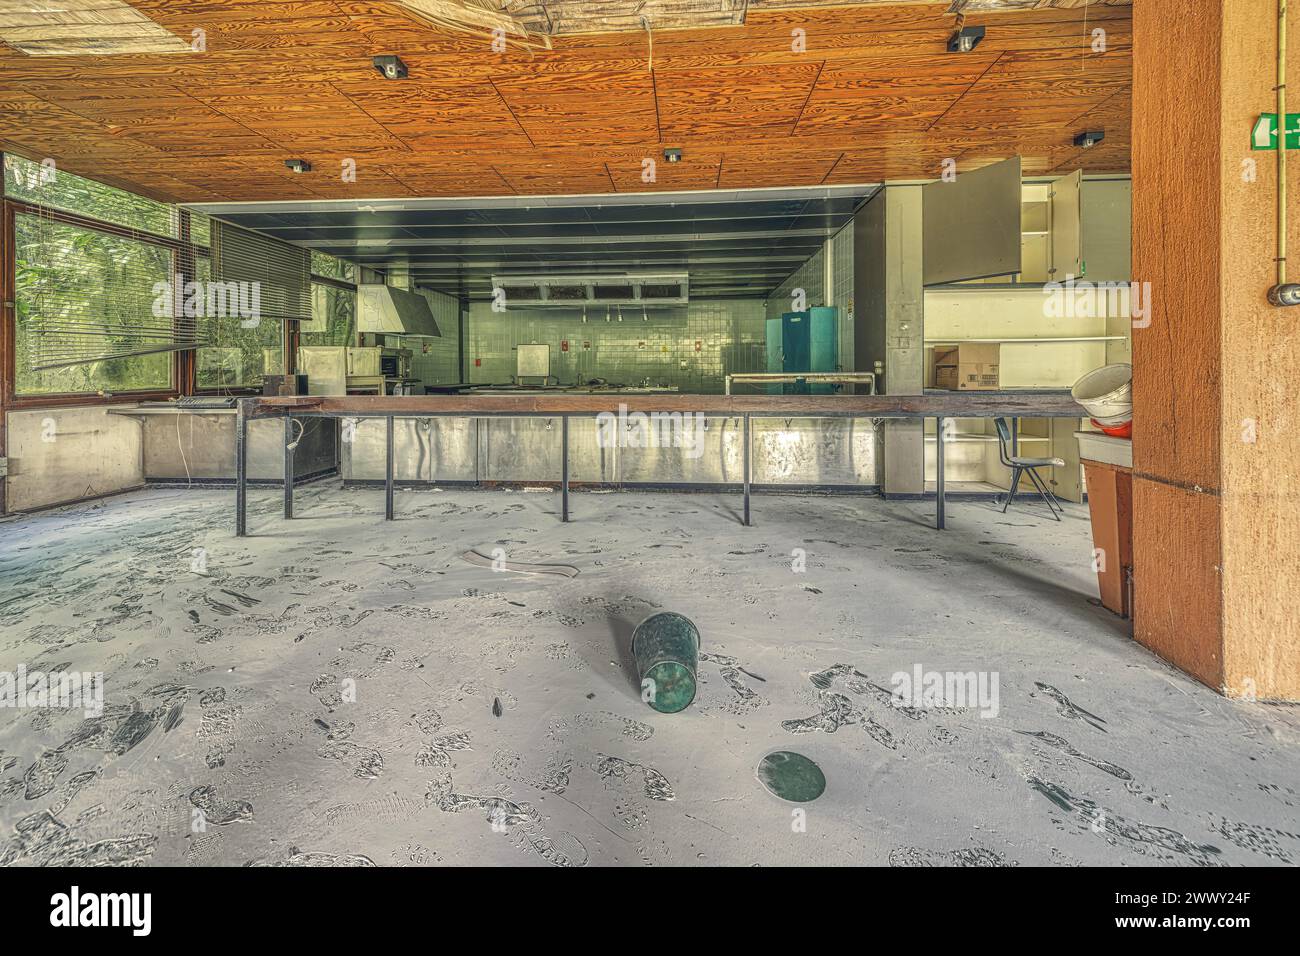 Laboratoire vide et couvert de poussière avec des gravats et une bouteille verte sur le sol, Institut de biologie moléculaire, Lost place, Sint-Genesius-Rode Banque D'Images